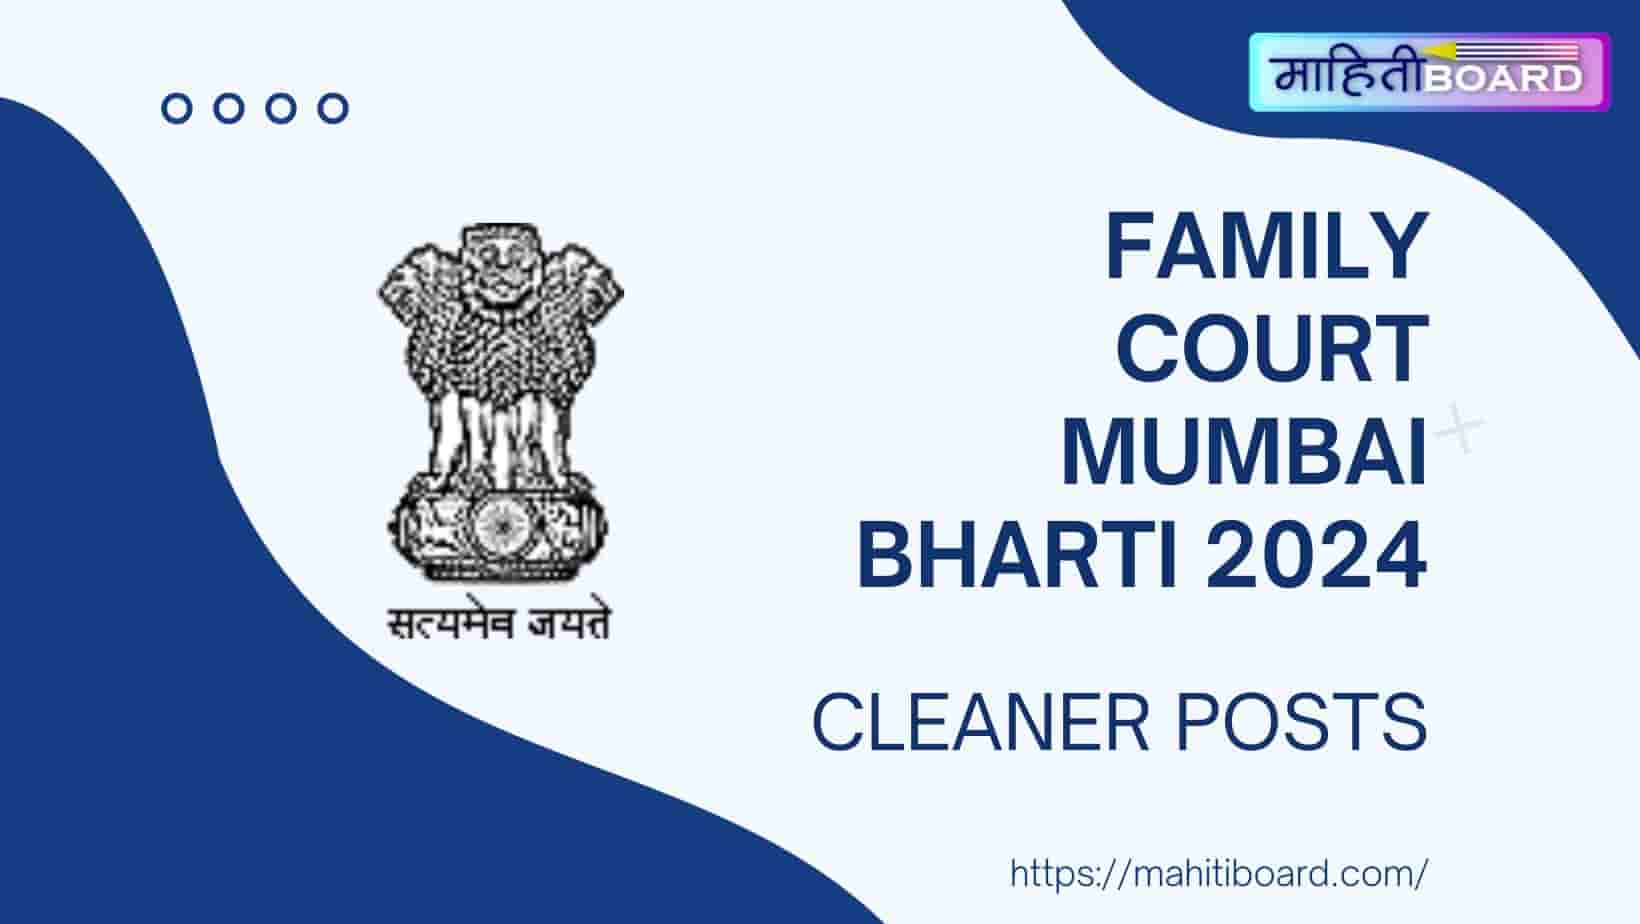 Family Court Mumbai Bharti 2024